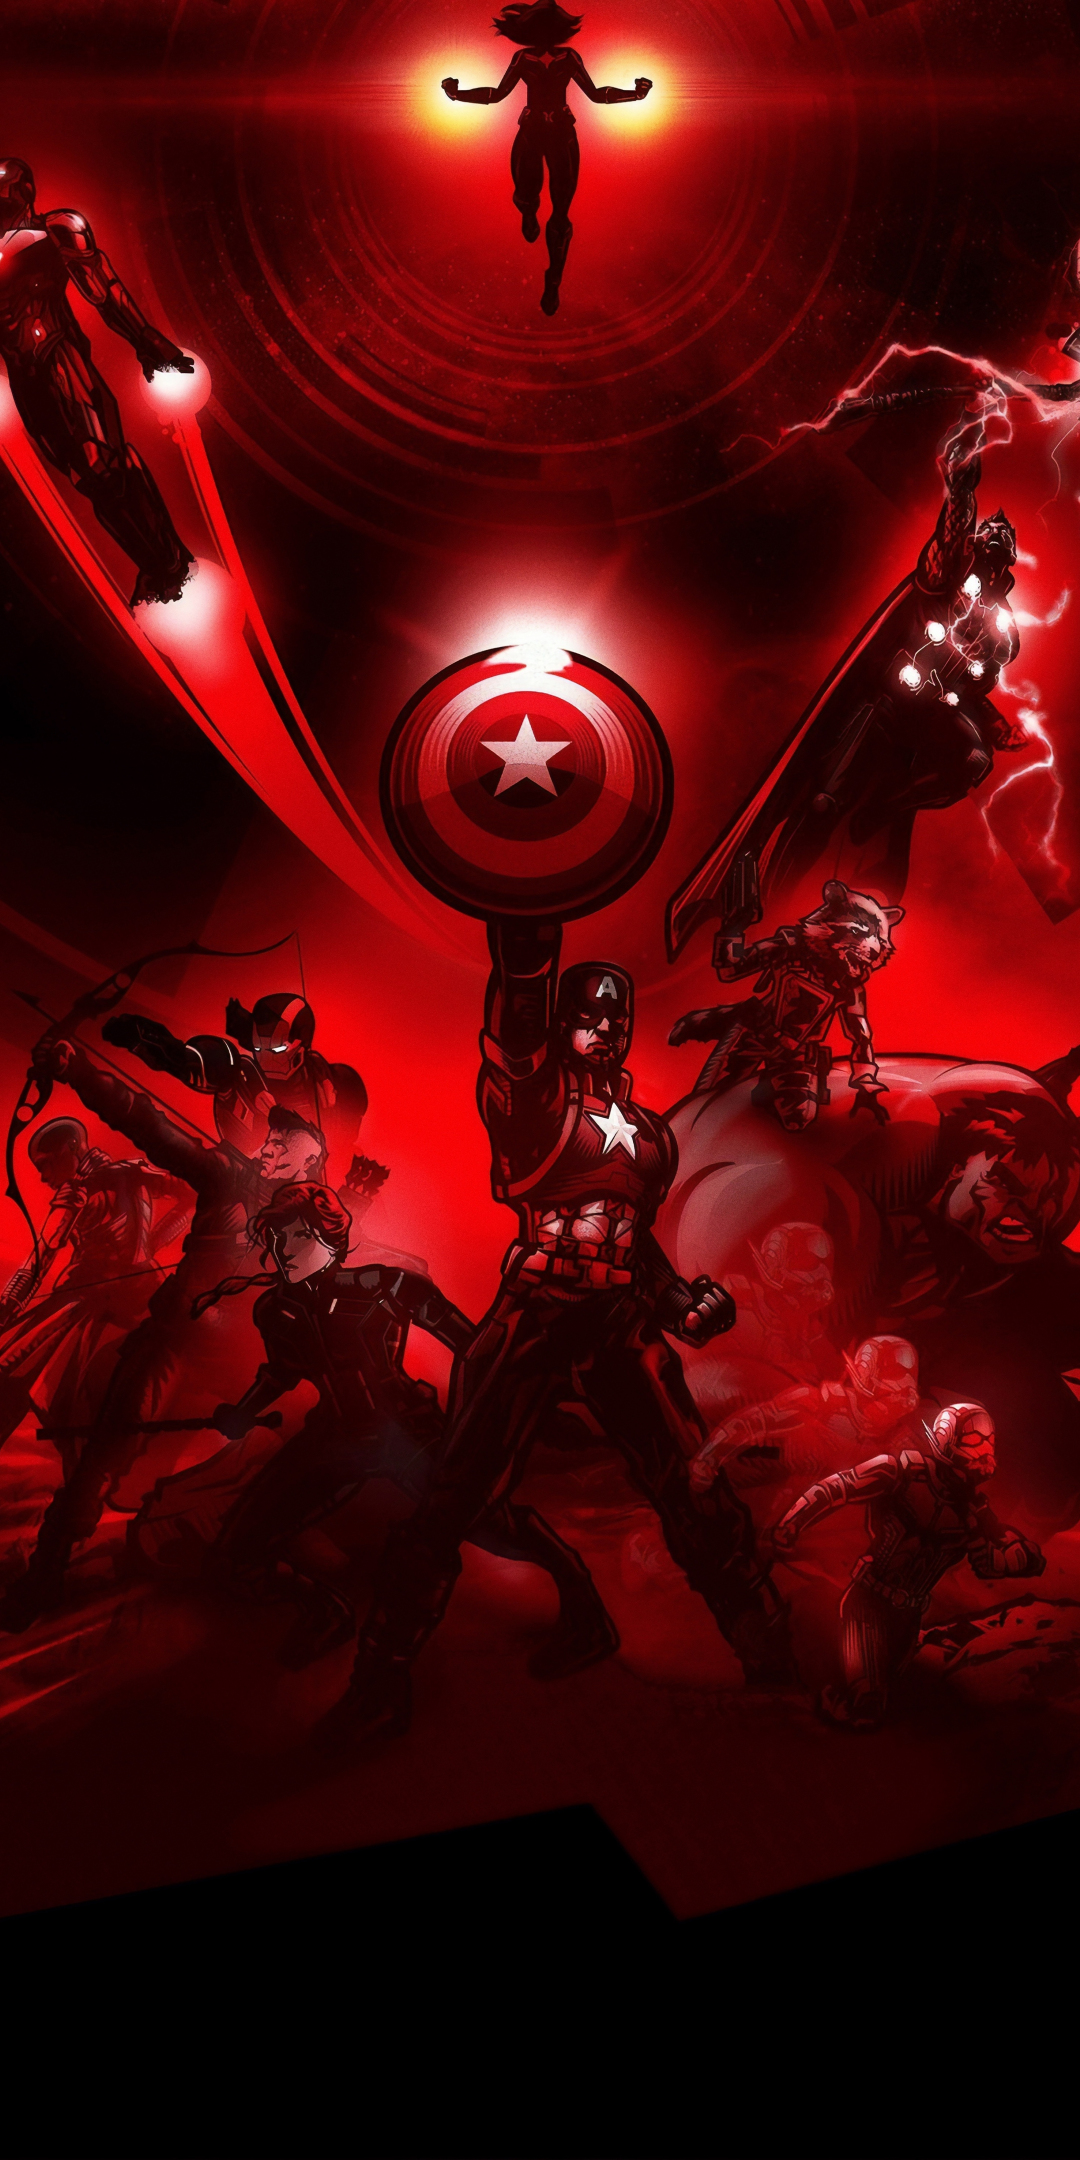 Avengers: Endgame, Marvel superheroes, red, 1080x2160 wallpaper